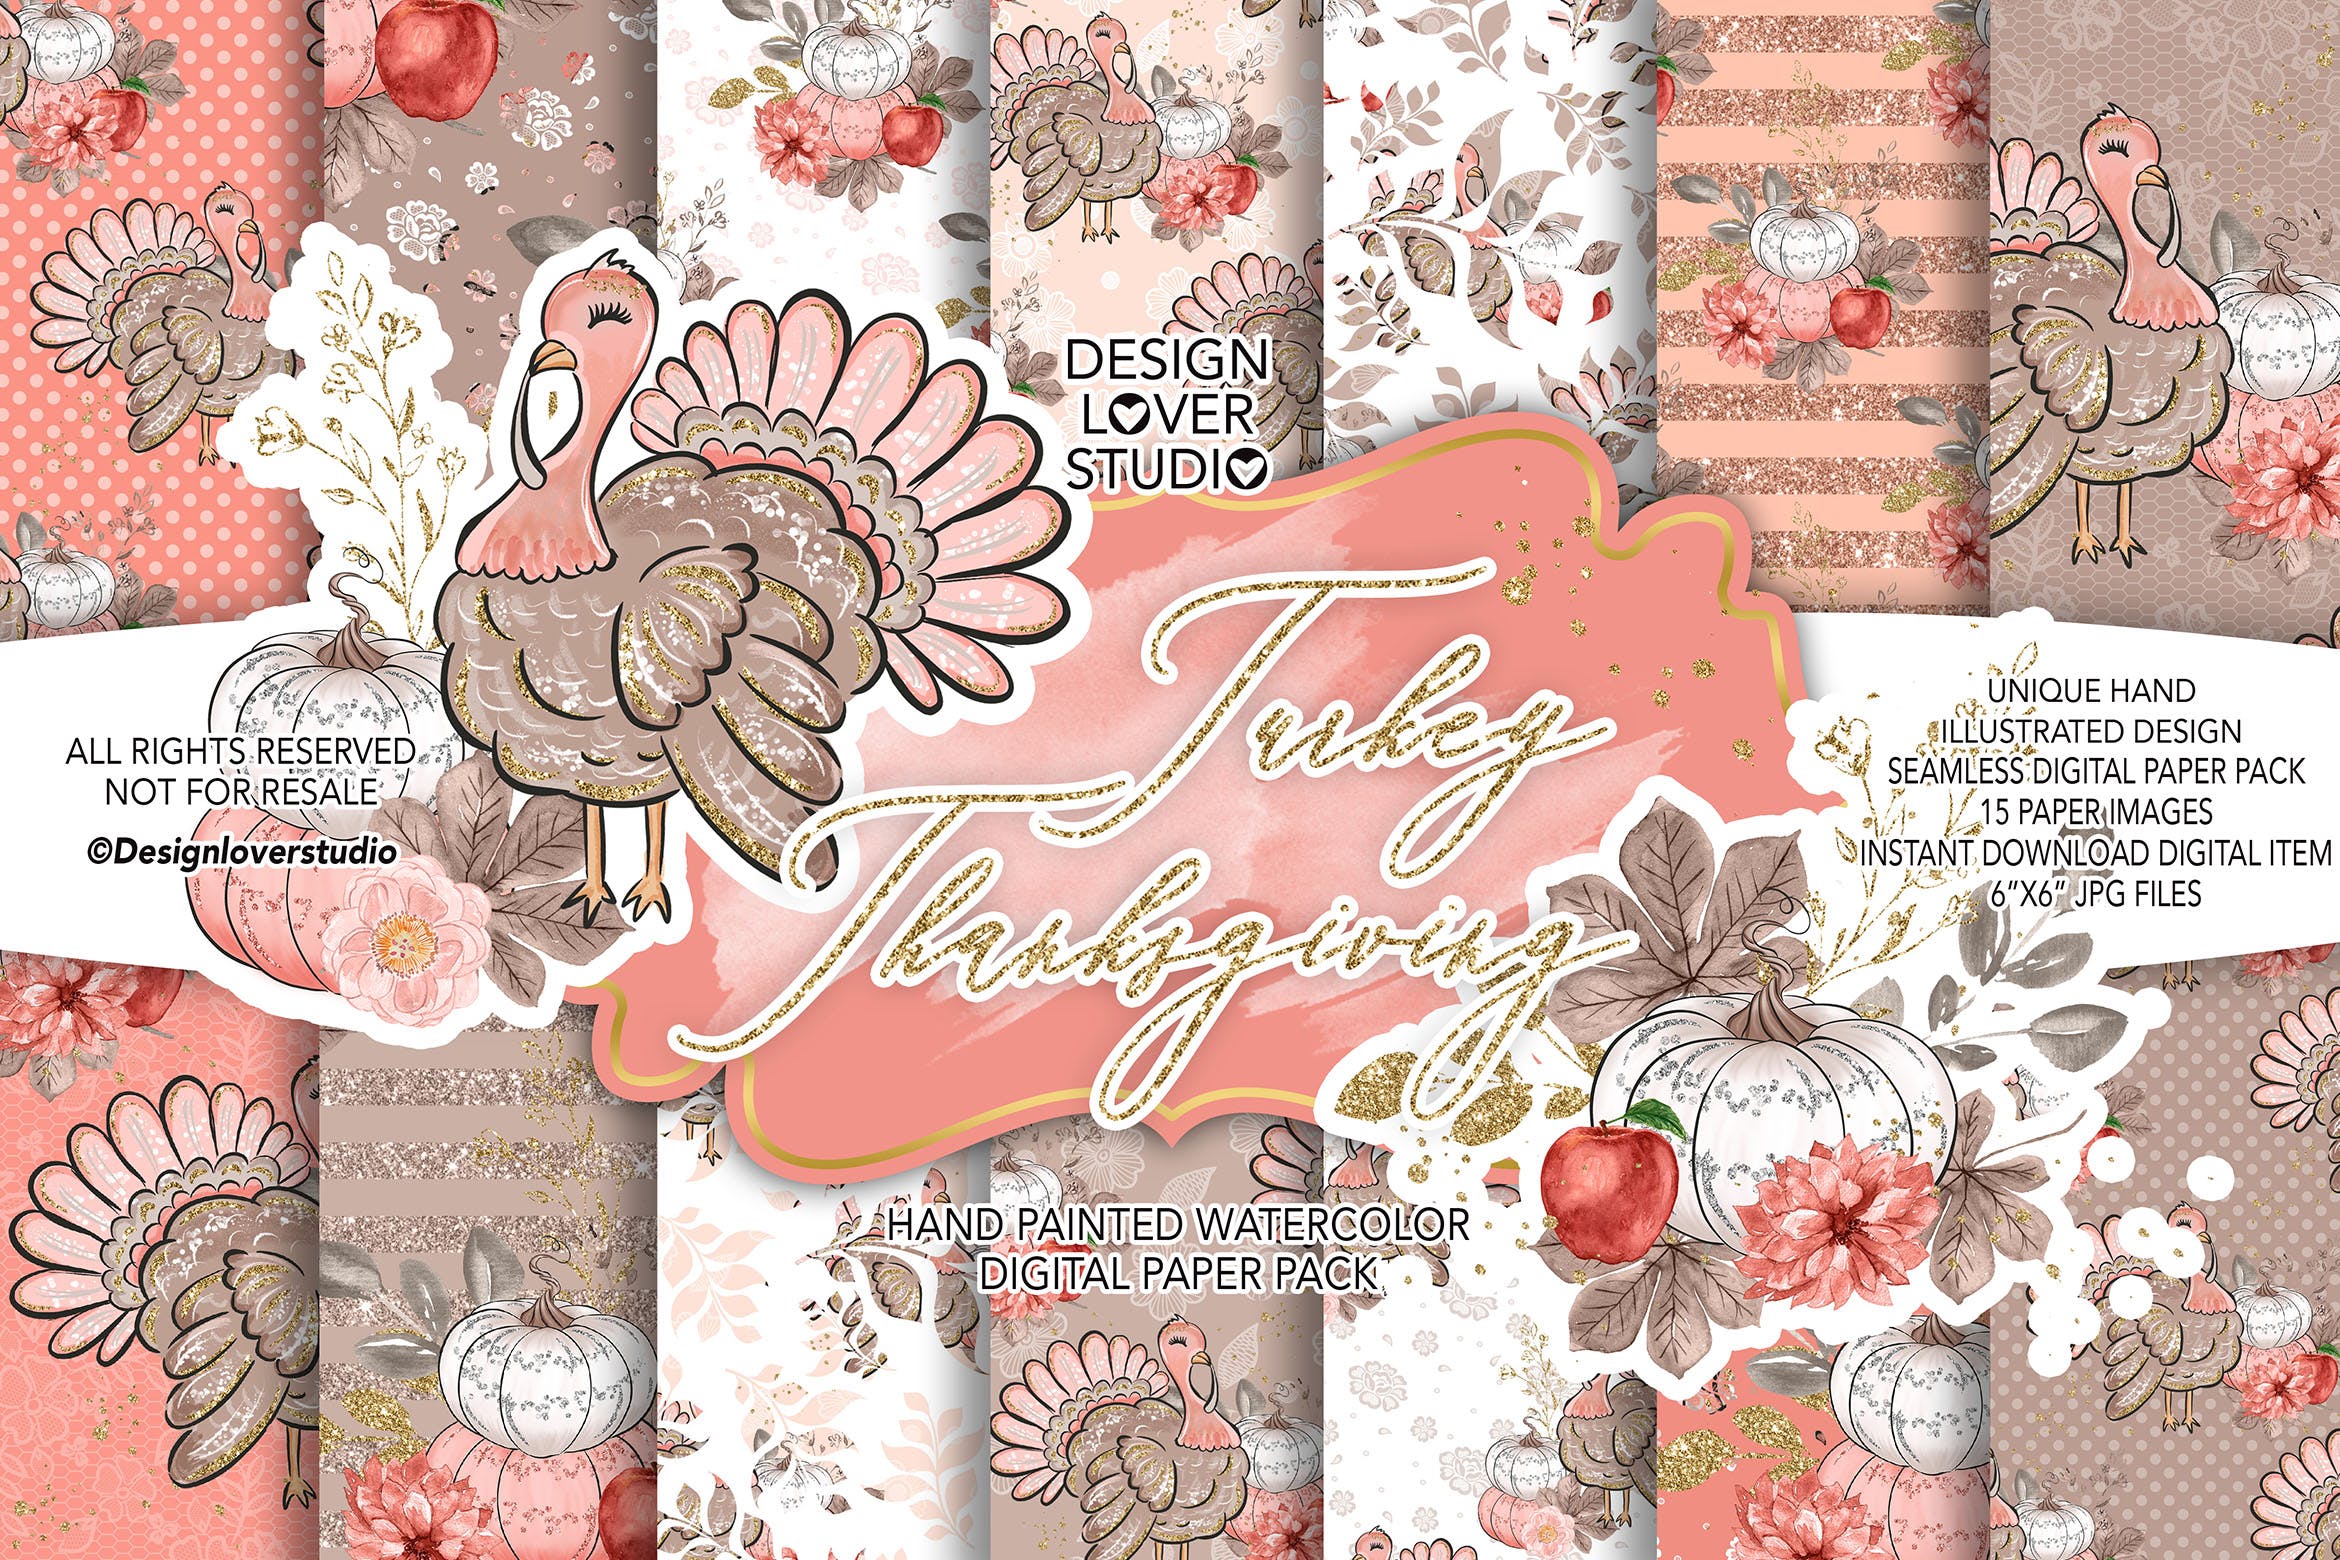 感恩节主题火鸡手绘图案数码纸张素材 Turkey Thanksgiving digital paper pack插图